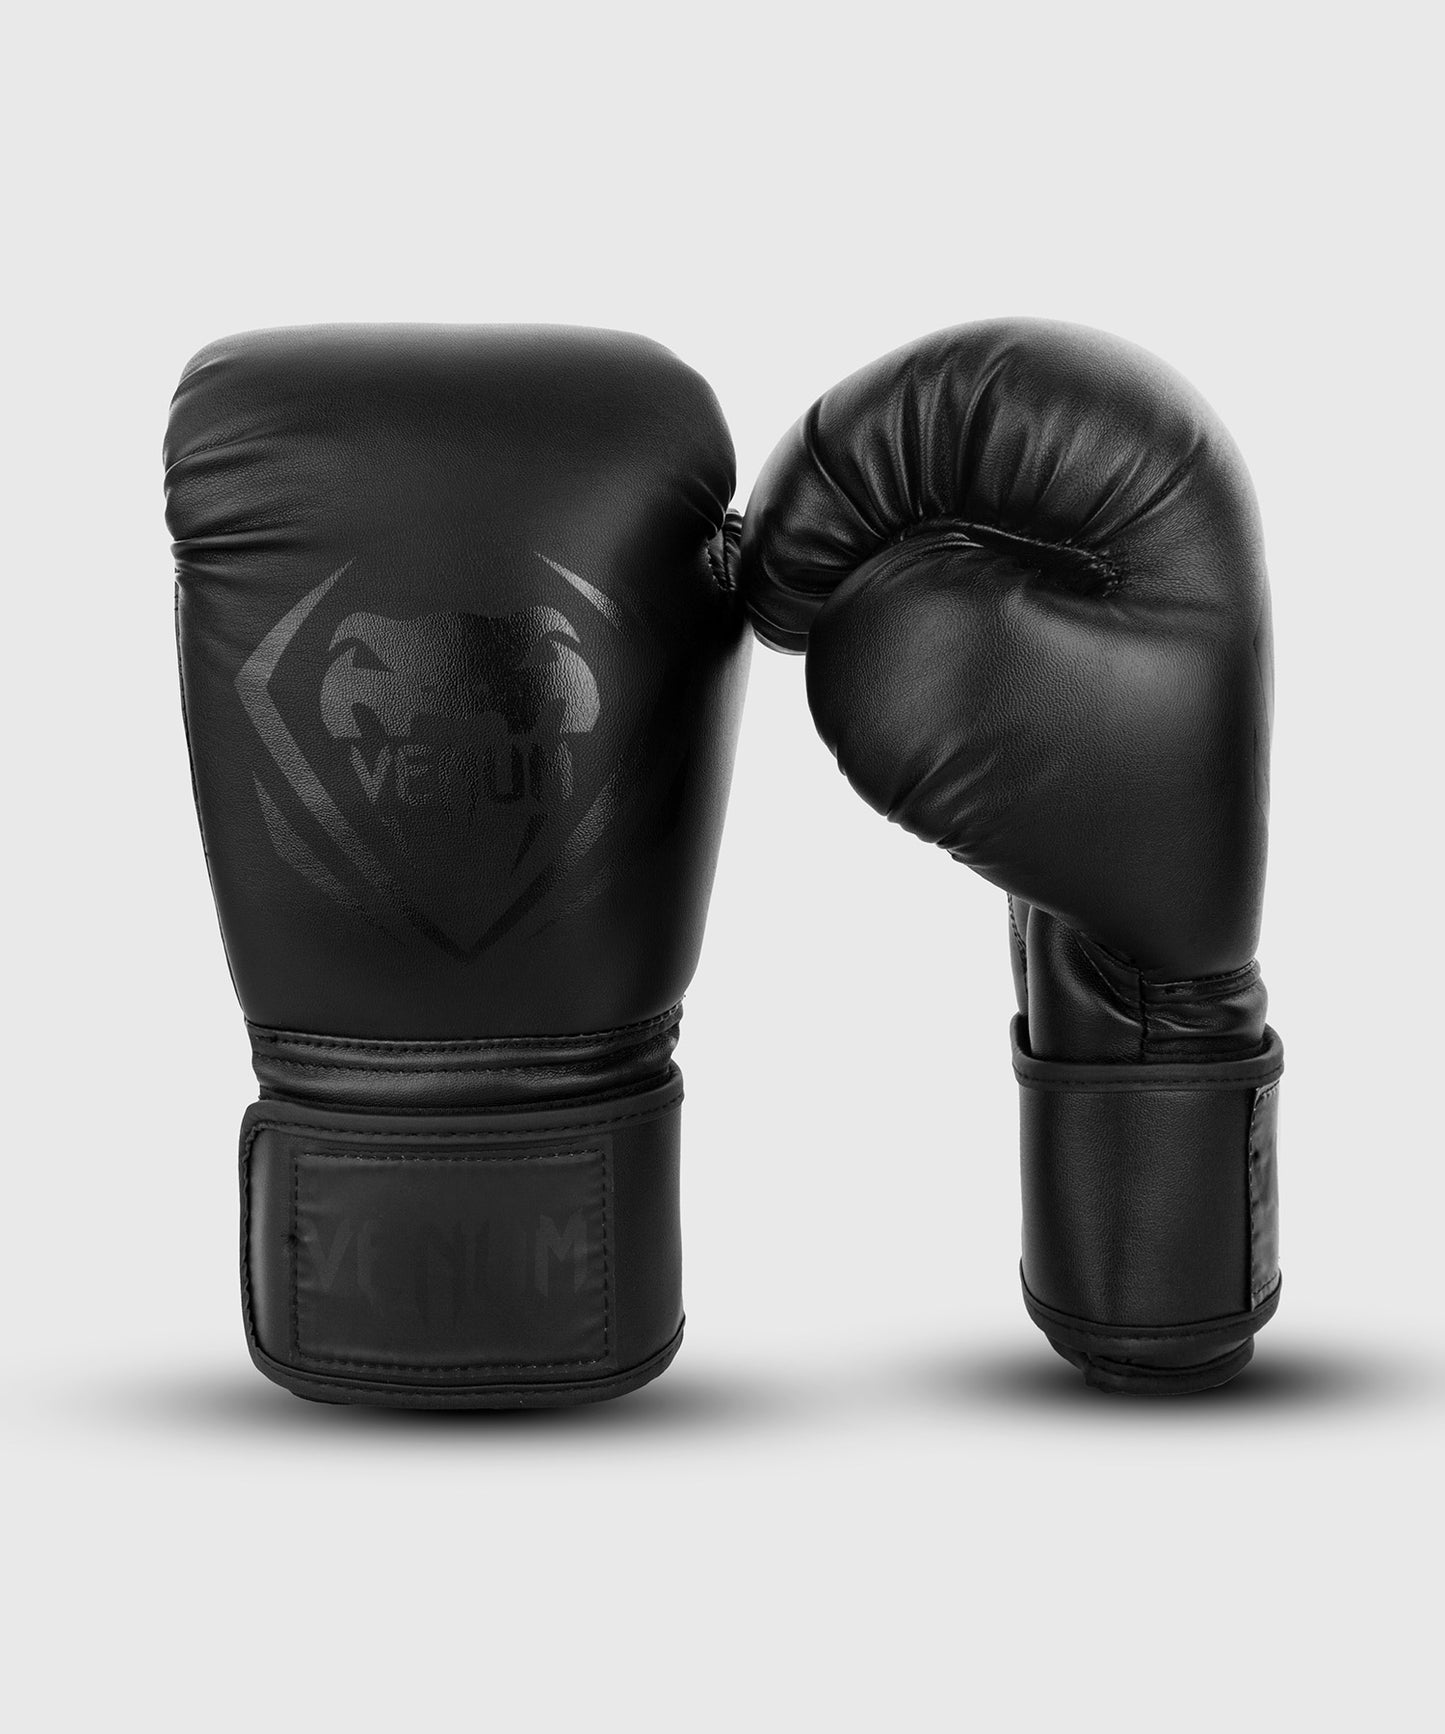 Guantes de Boxeo de Competición Venum  - Negro/Negro